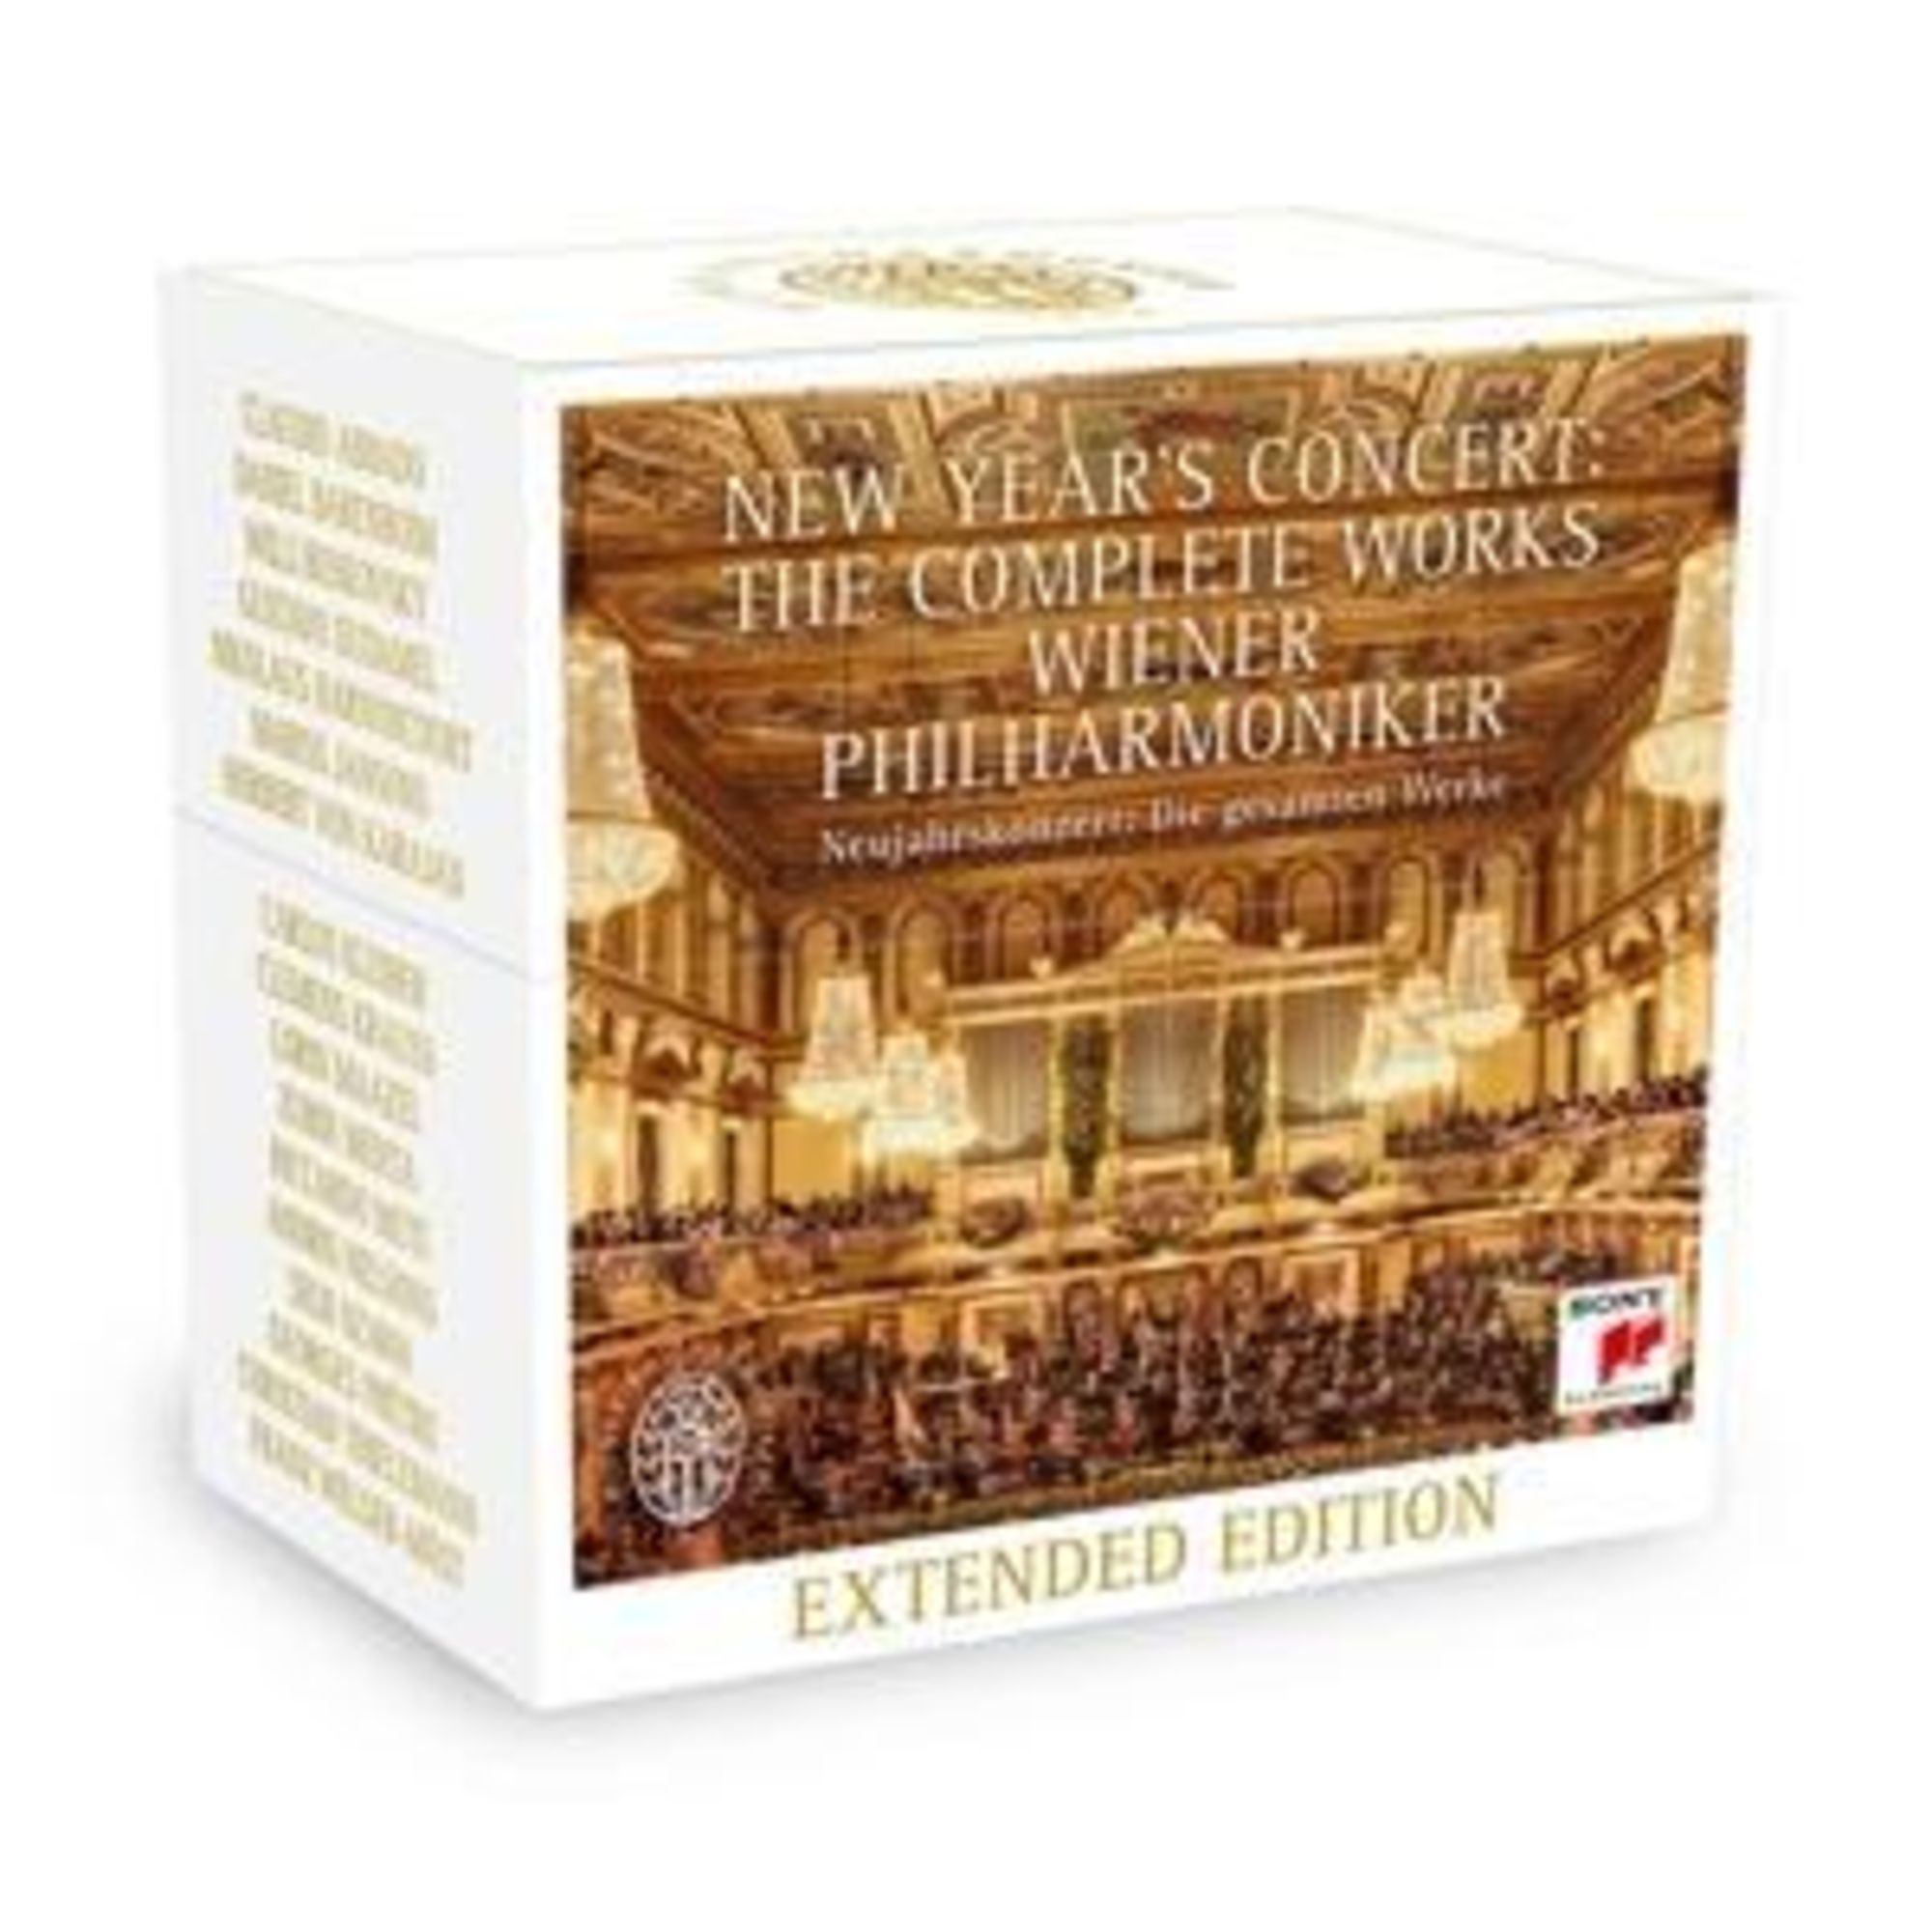 Werke-Extended　gesamten　Neujahrskonzert:Die　Ed.'　'CD'　Philharmoniker'　von　auf　'Wiener　Musik